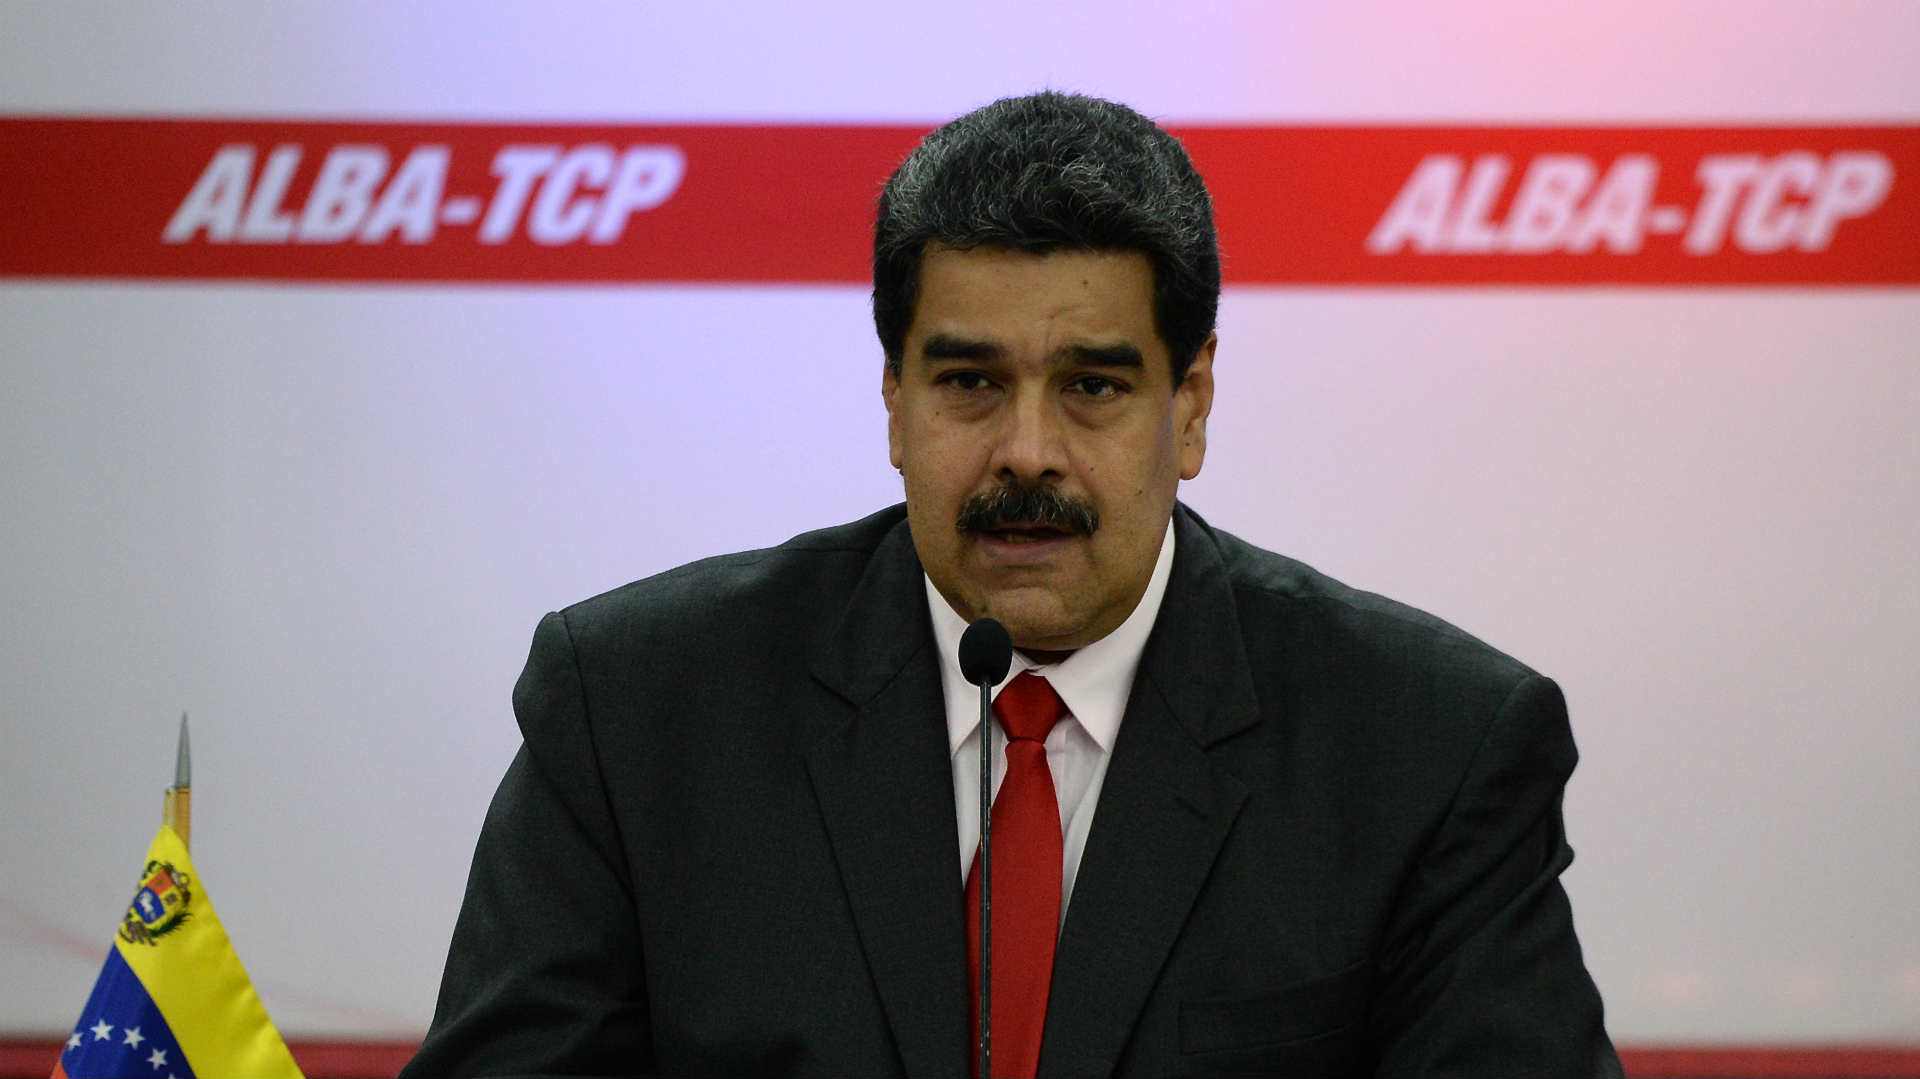 El Senado de Florida aprueba vetar negocios con firmas que colaboren con Maduro